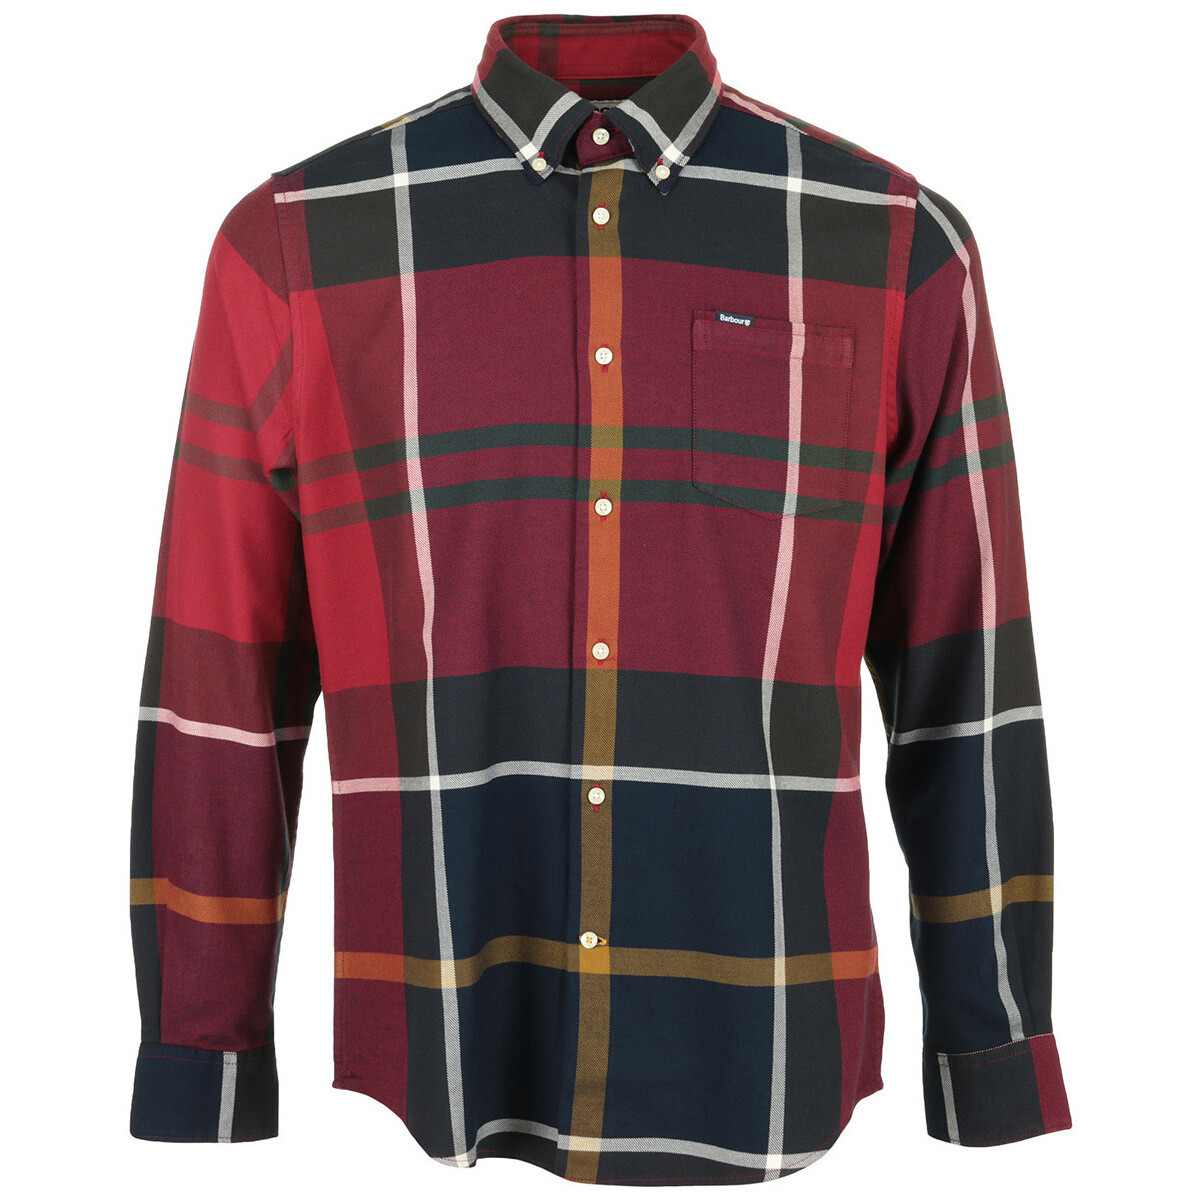 Textiel Heren Overhemden lange mouwen Barbour Dunoon Tailored Shirt Rood